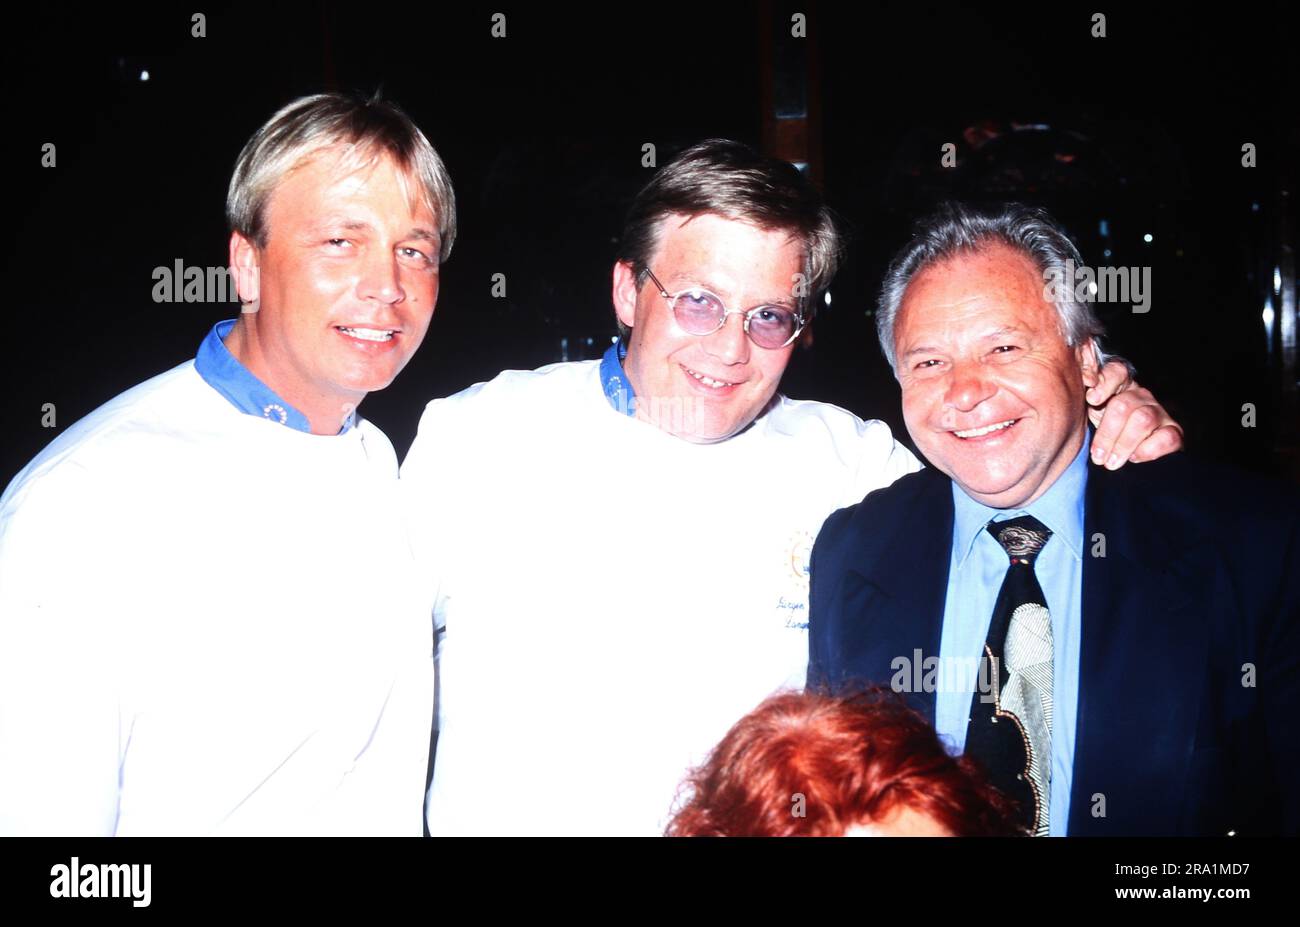 Michael Wollenberg, Jürgen Langenbacher und Eckart Witzigmann, österreichischer Gastronom und Spitzenkoch, Deutschland 1994. Banque D'Images